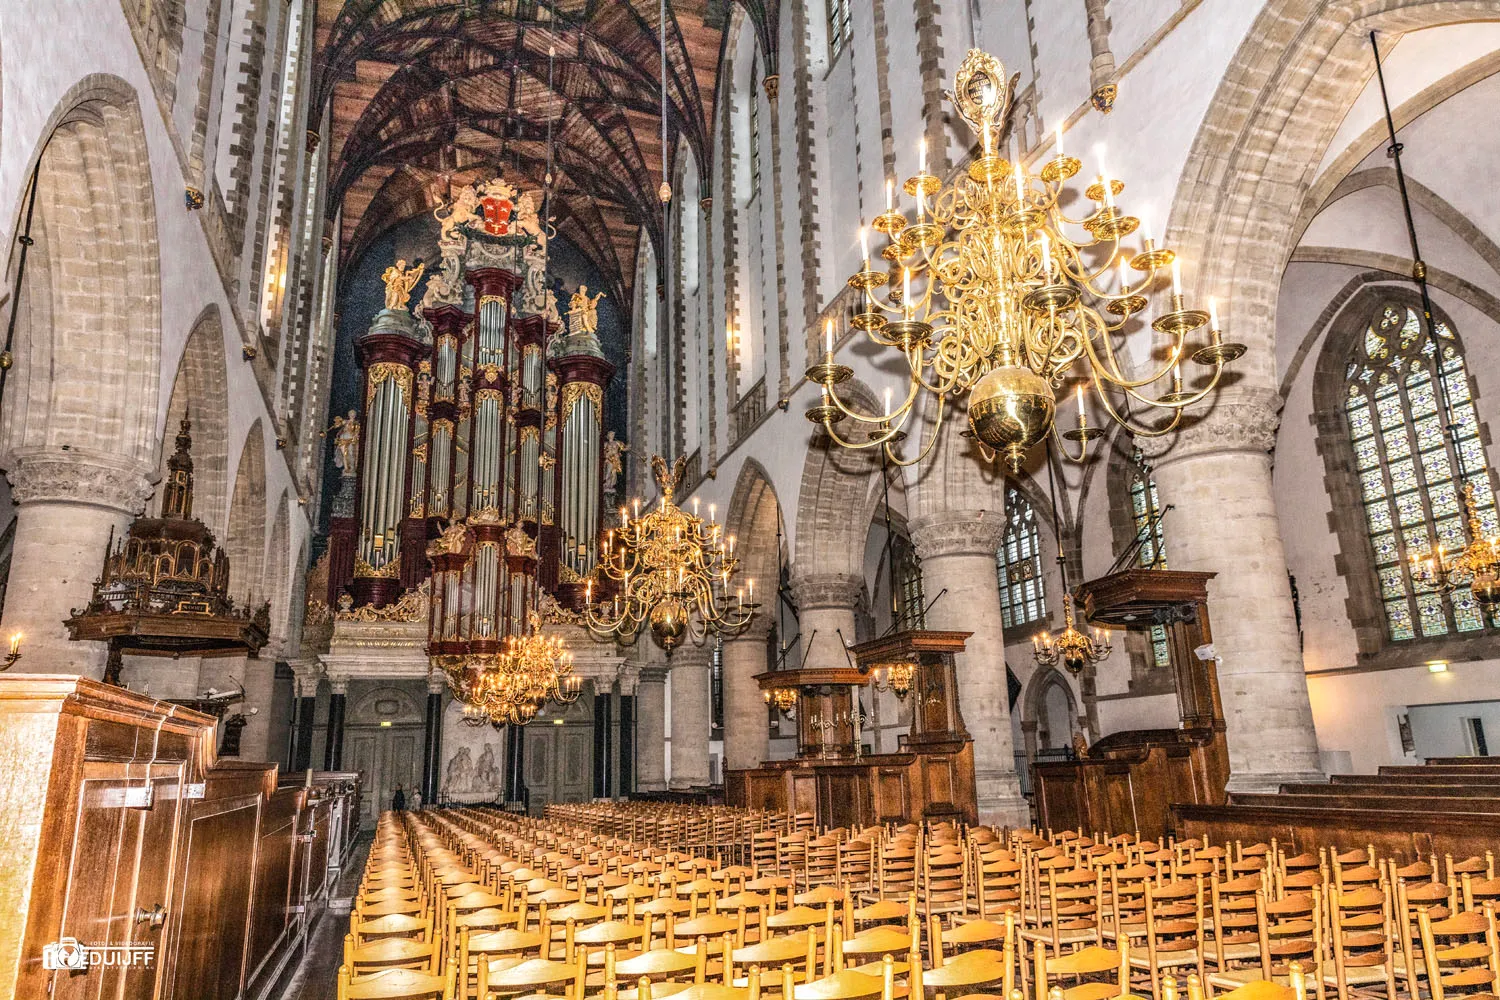 grote kerk inside organ